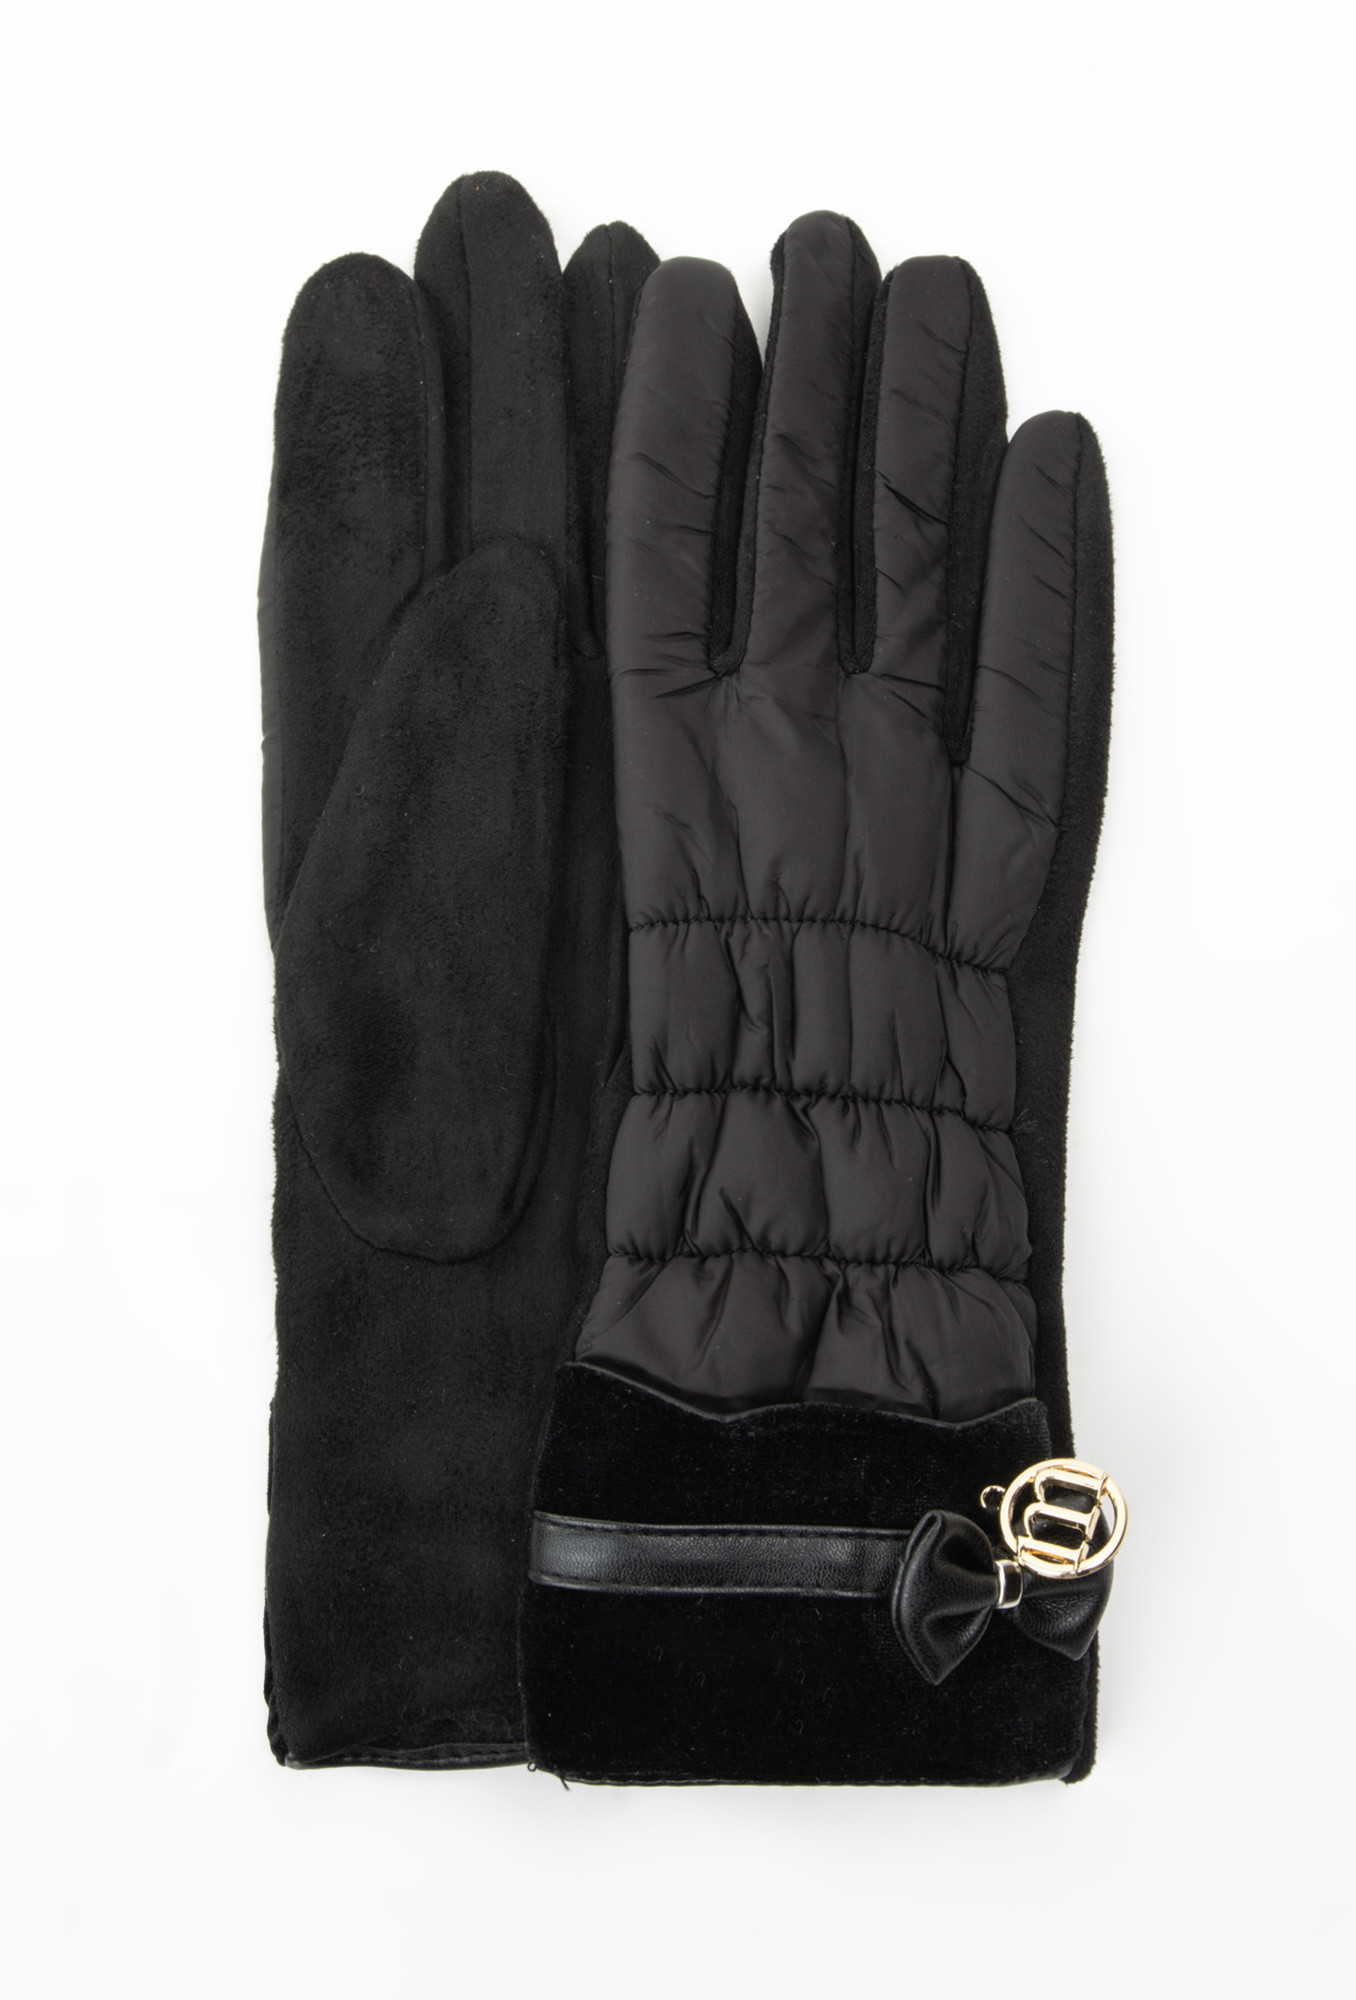 Monnari Rukavice Dámské kontrastní rukavice Black L/XL